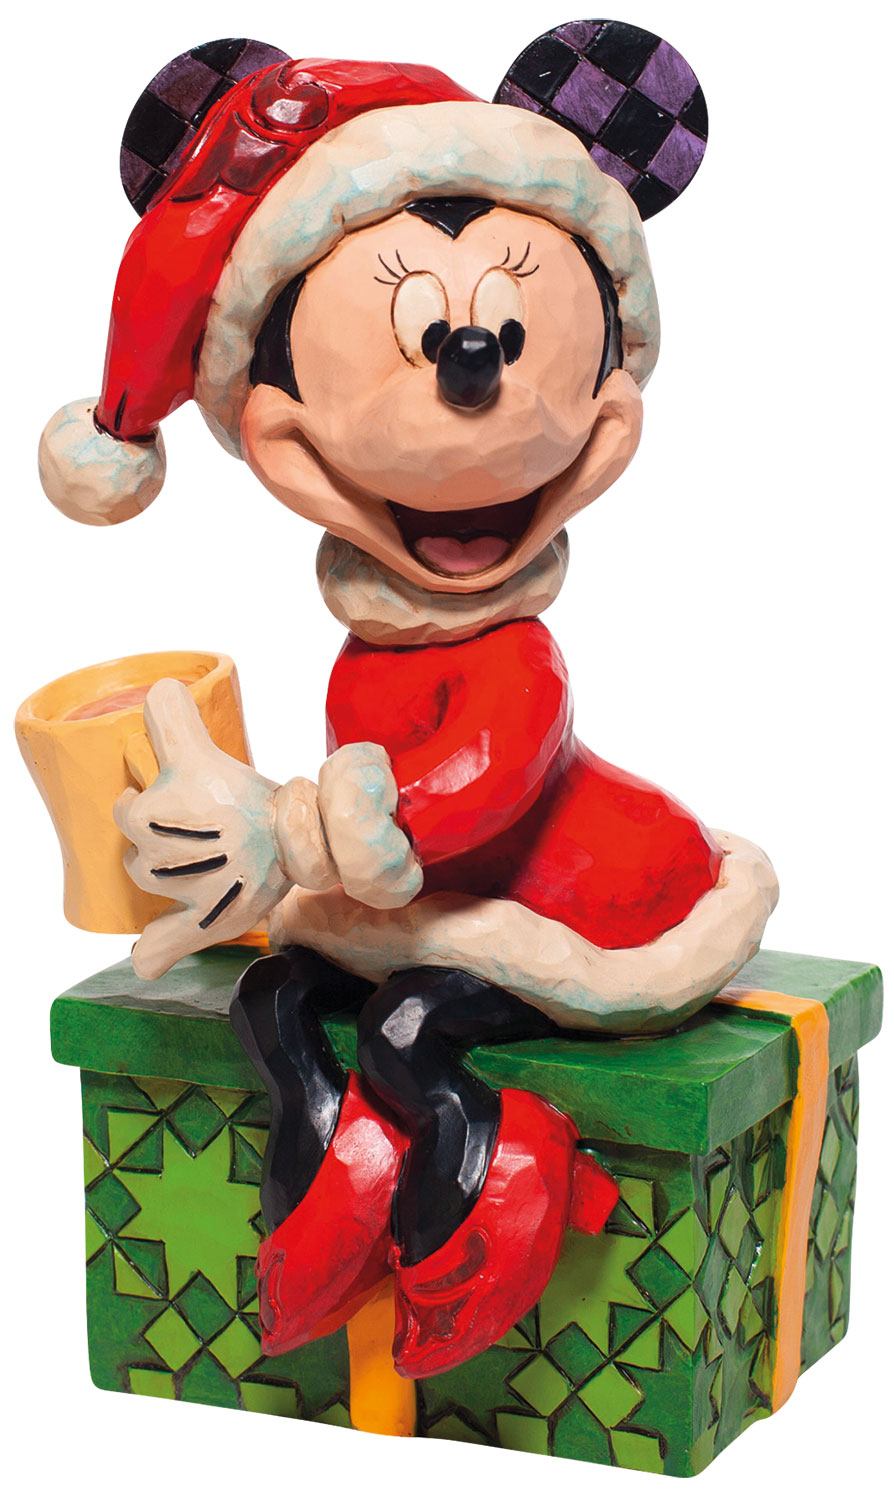 Skulptur "Minnie Mouse mit heißer Schokolade", Kunstguss von Jim Shore